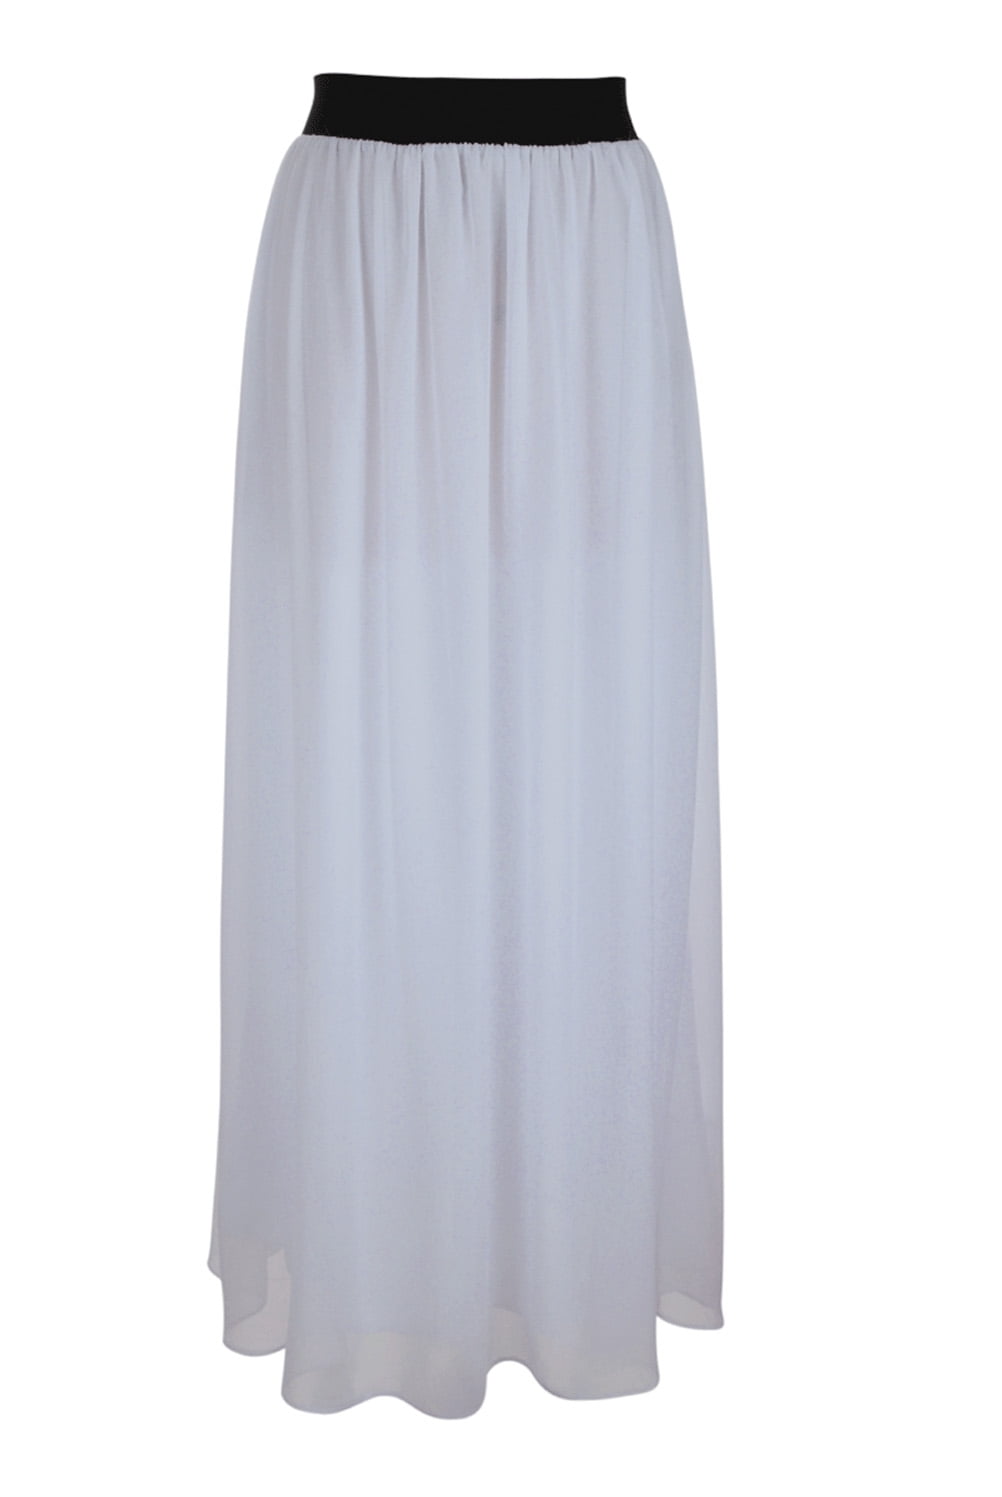 Faship - Faship Women Long Retro Pleated Maxi Skirt White - White,L ...